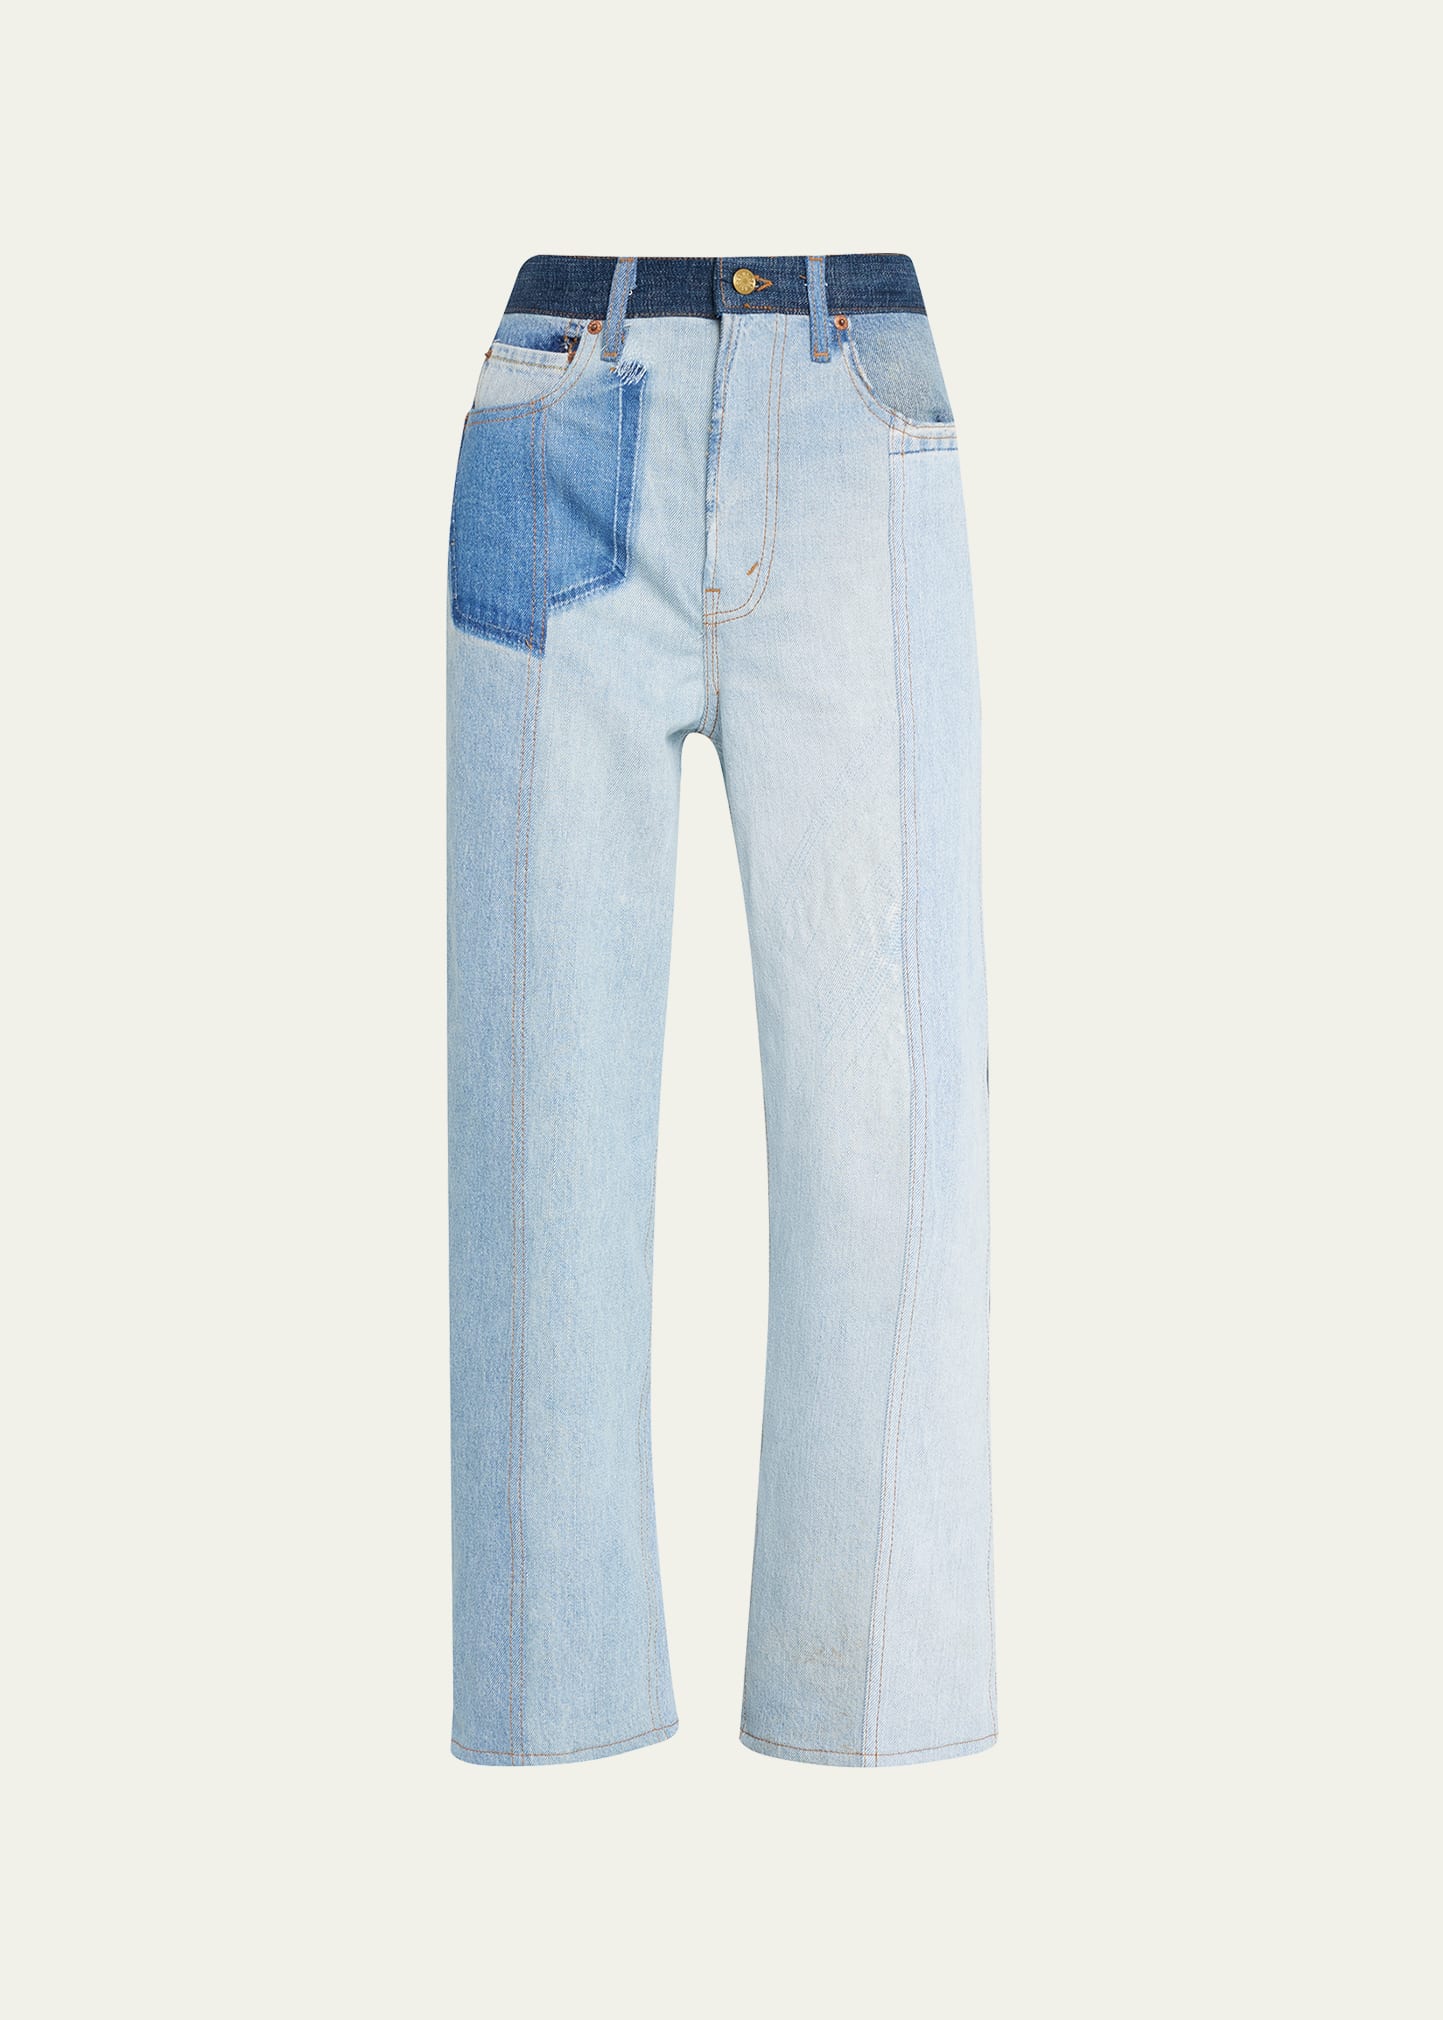 B Sides Plein Rework Jeans In Vintage Indigo